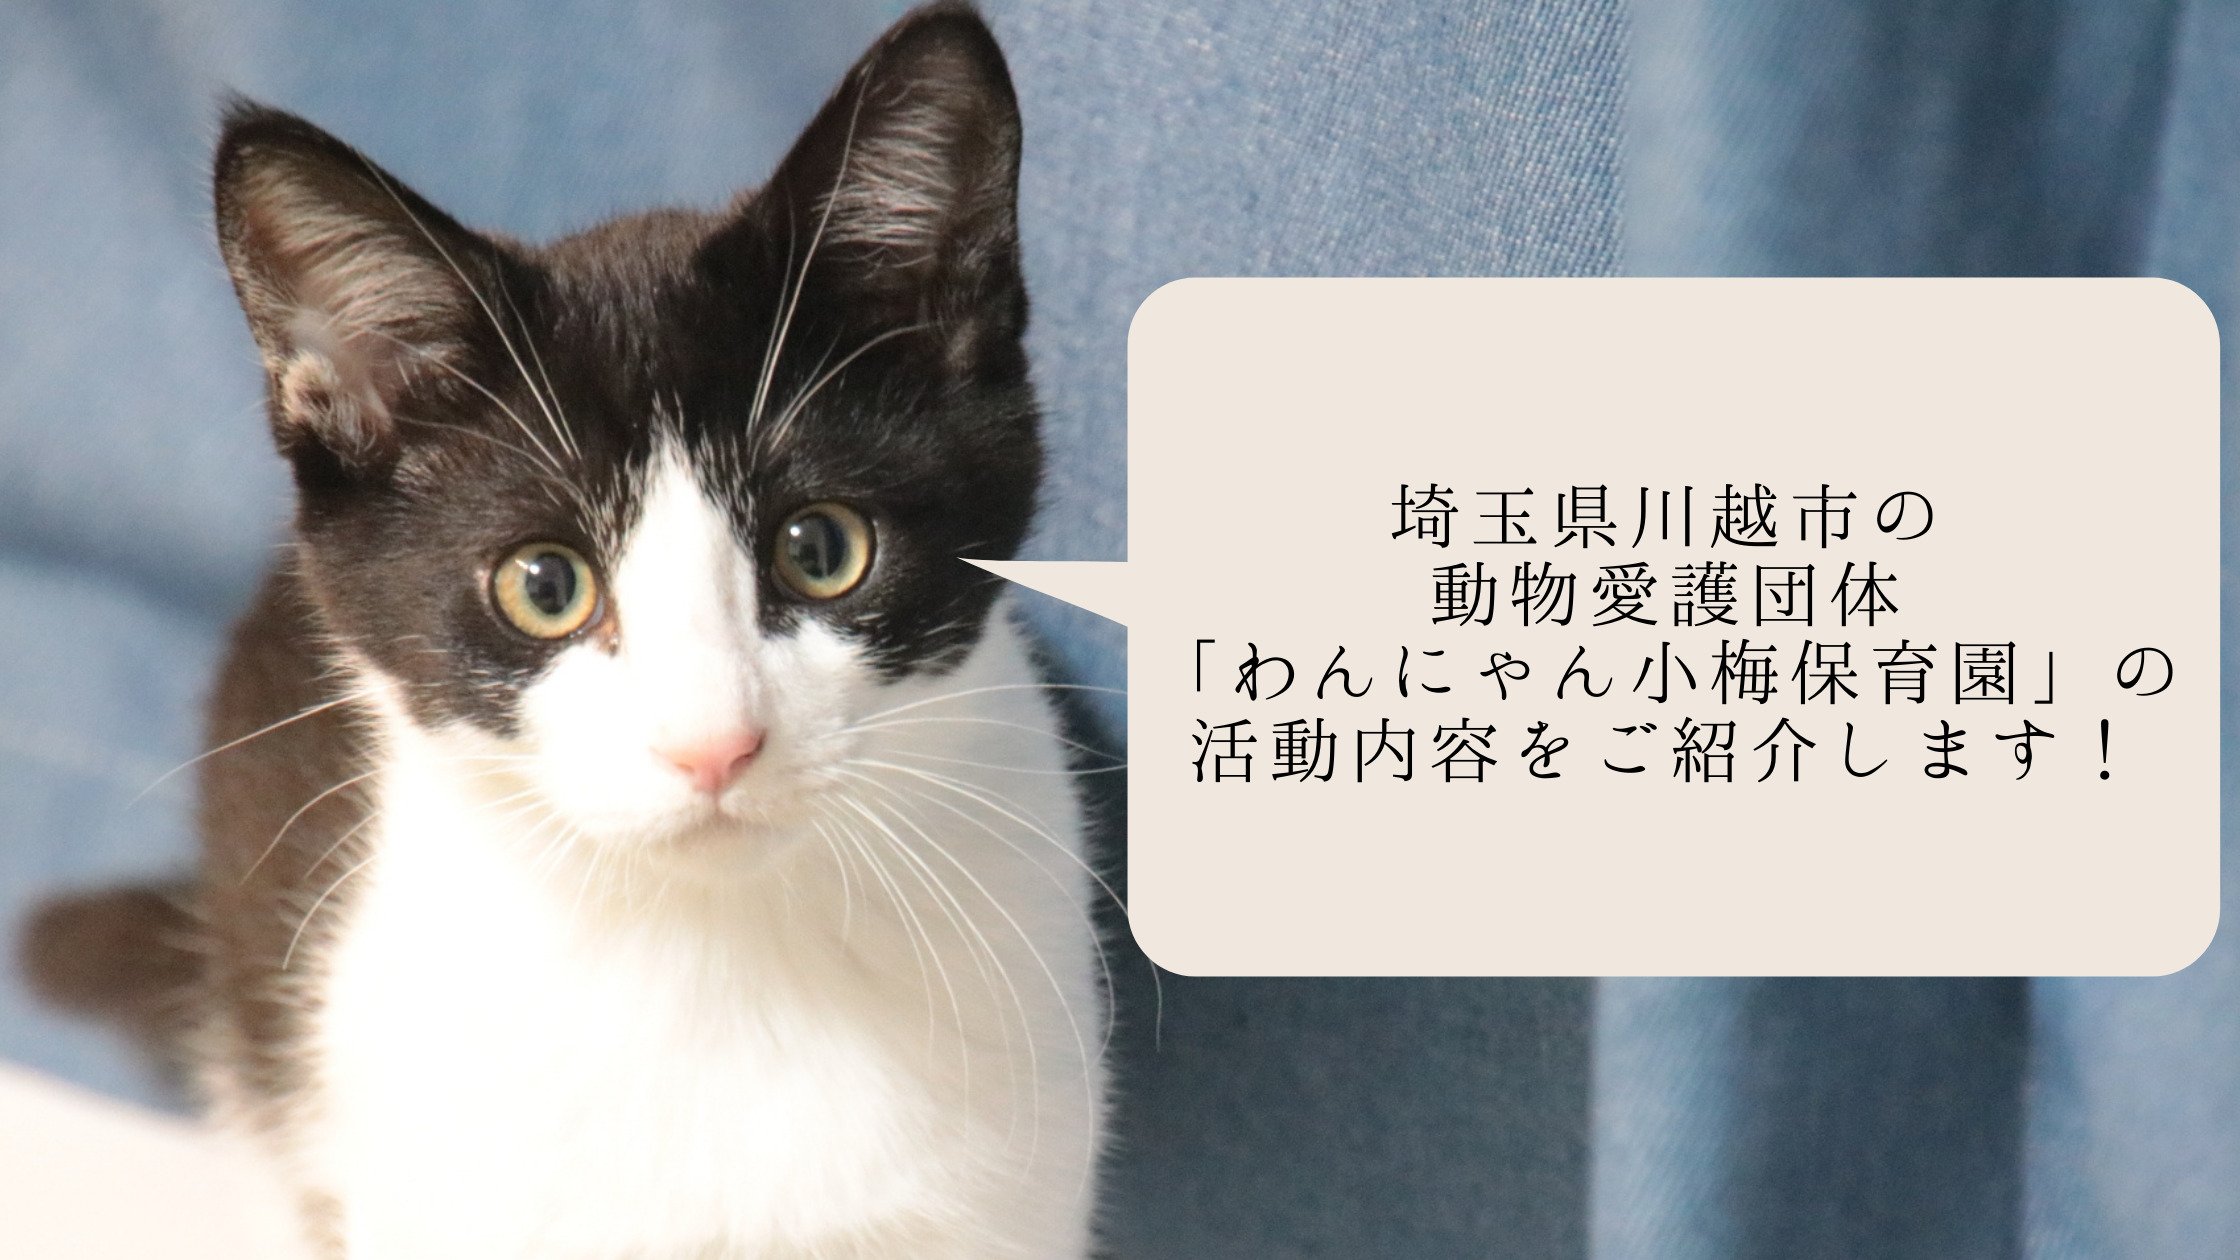 埼玉県川越市の動物愛護団体 わんにゃん小梅保育園 の活動内容をご紹介します ねこわら